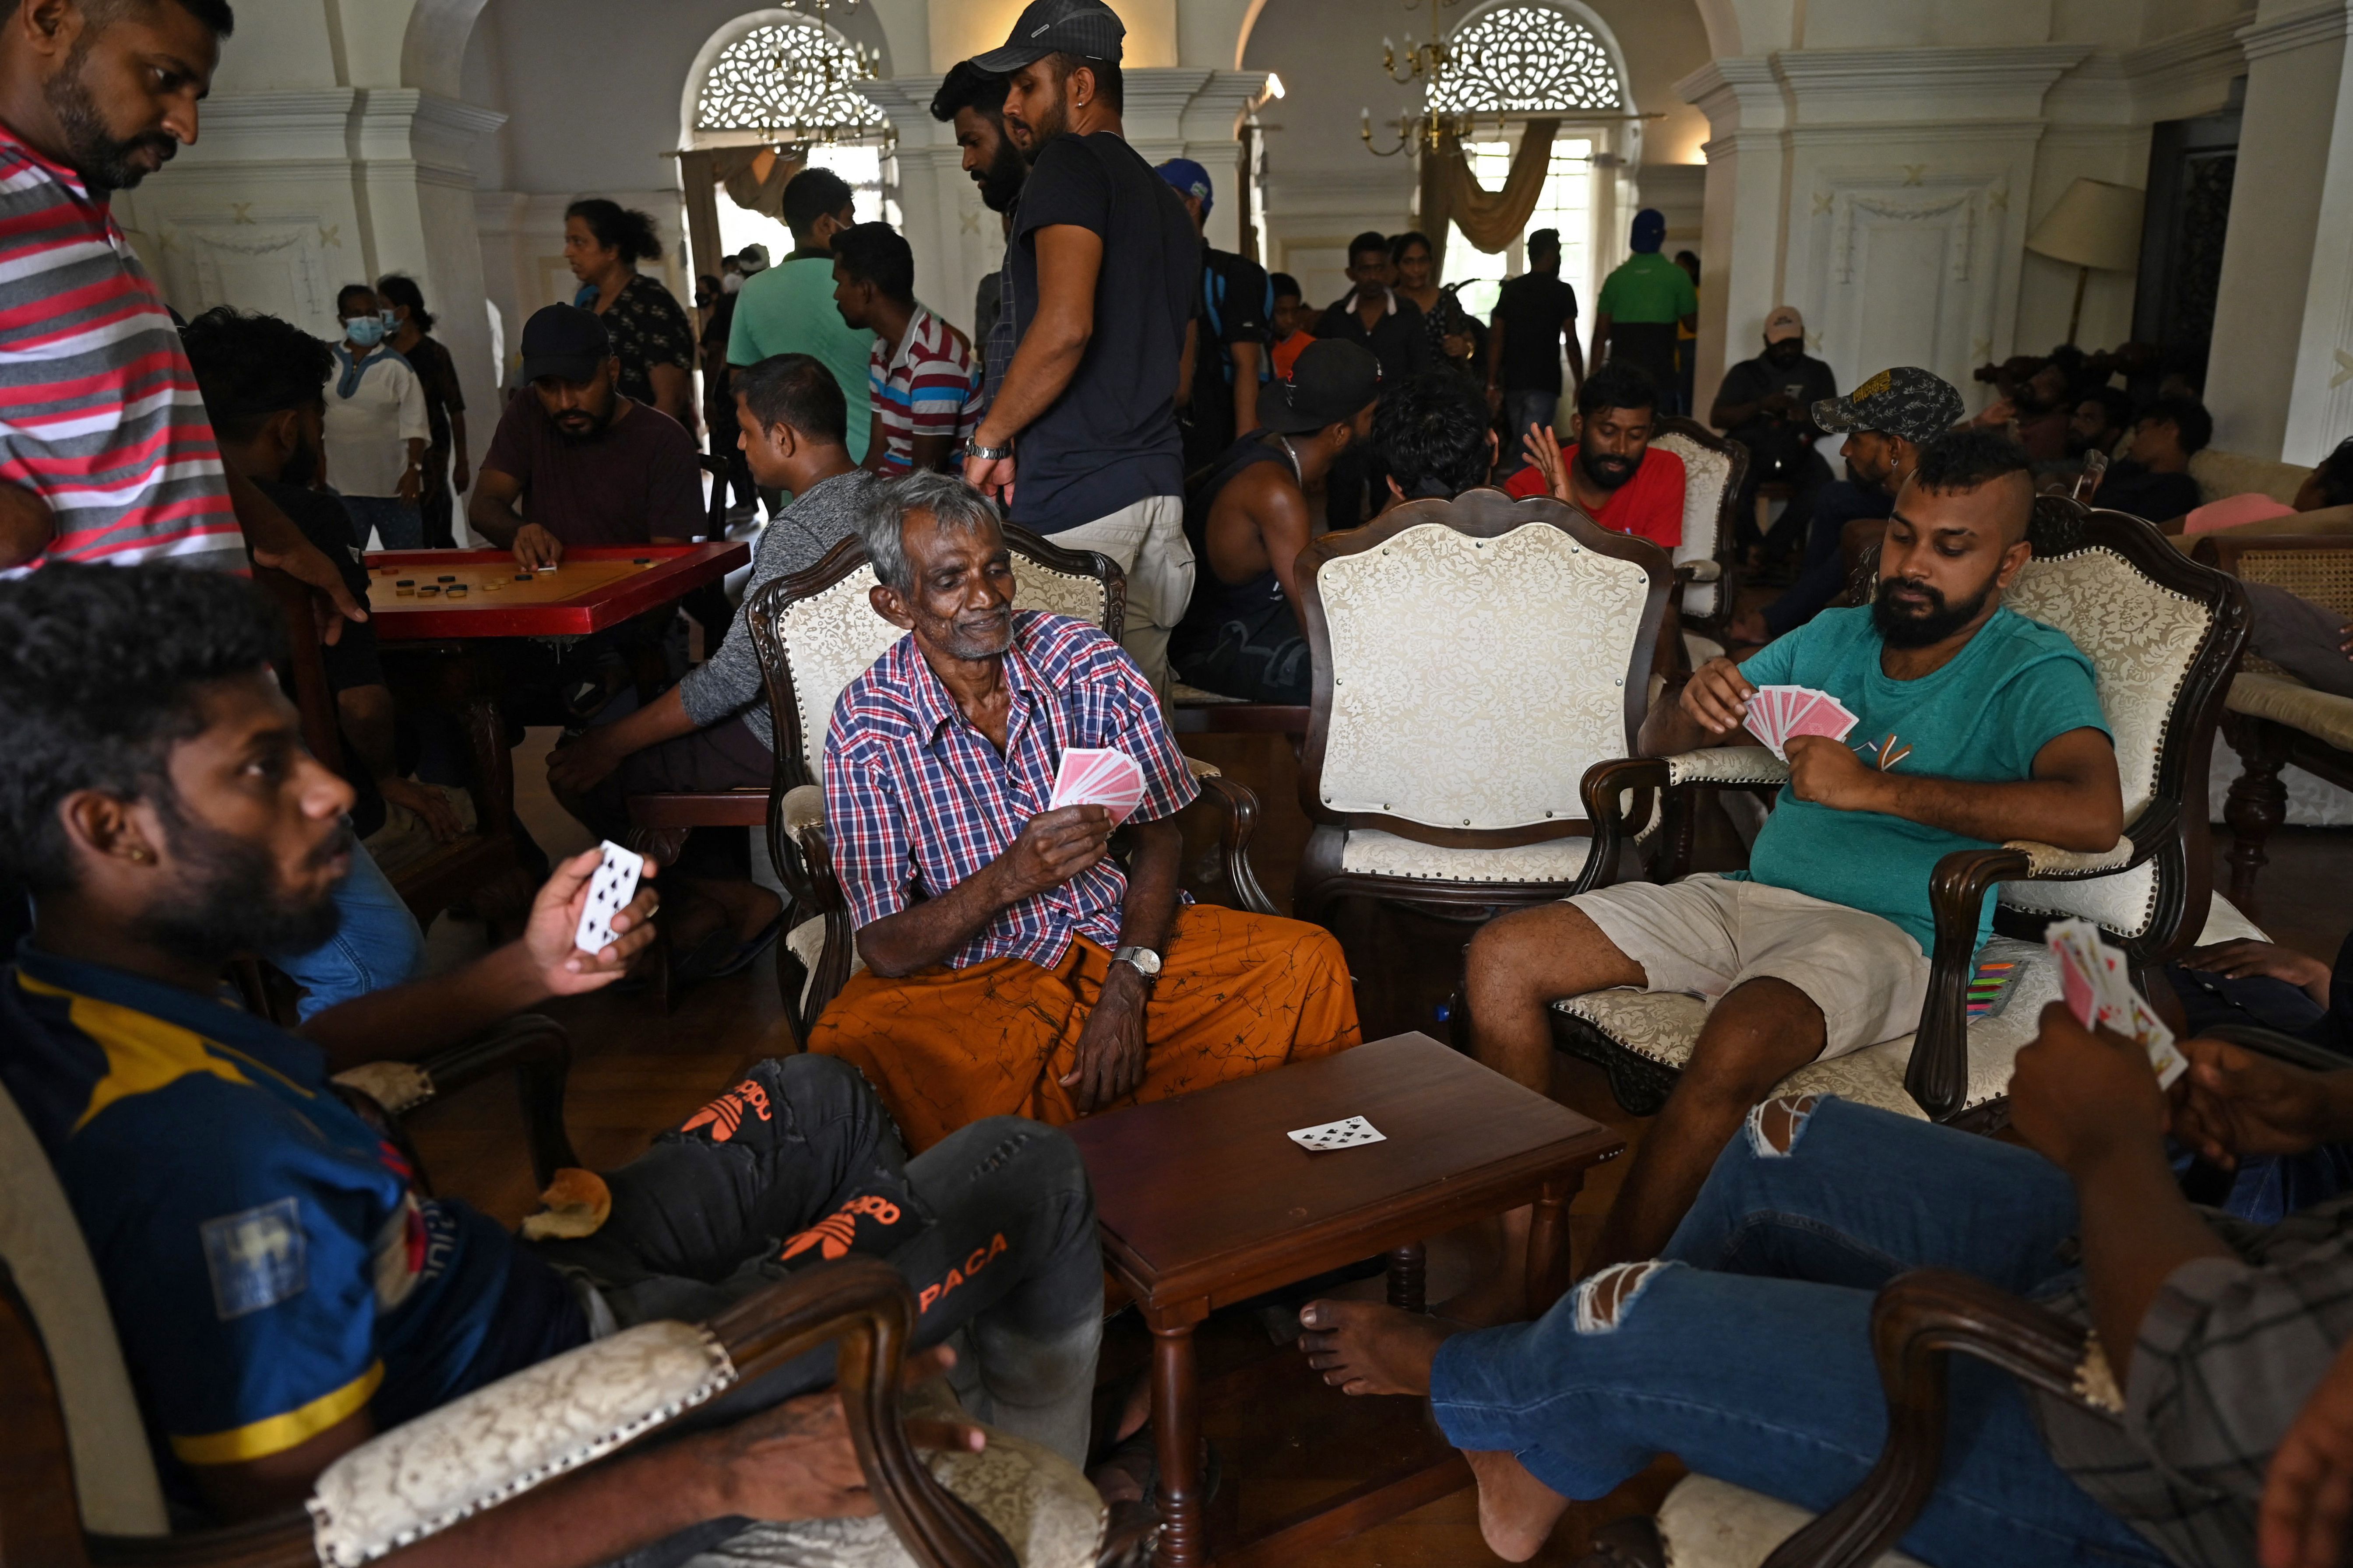 10. Juli: Menschen spielen Karten in den Räumen des sri-lankischen Premierministers, nachdem regierungsfeindliche Demonstranten den Amtssitz gestürmt haben. 